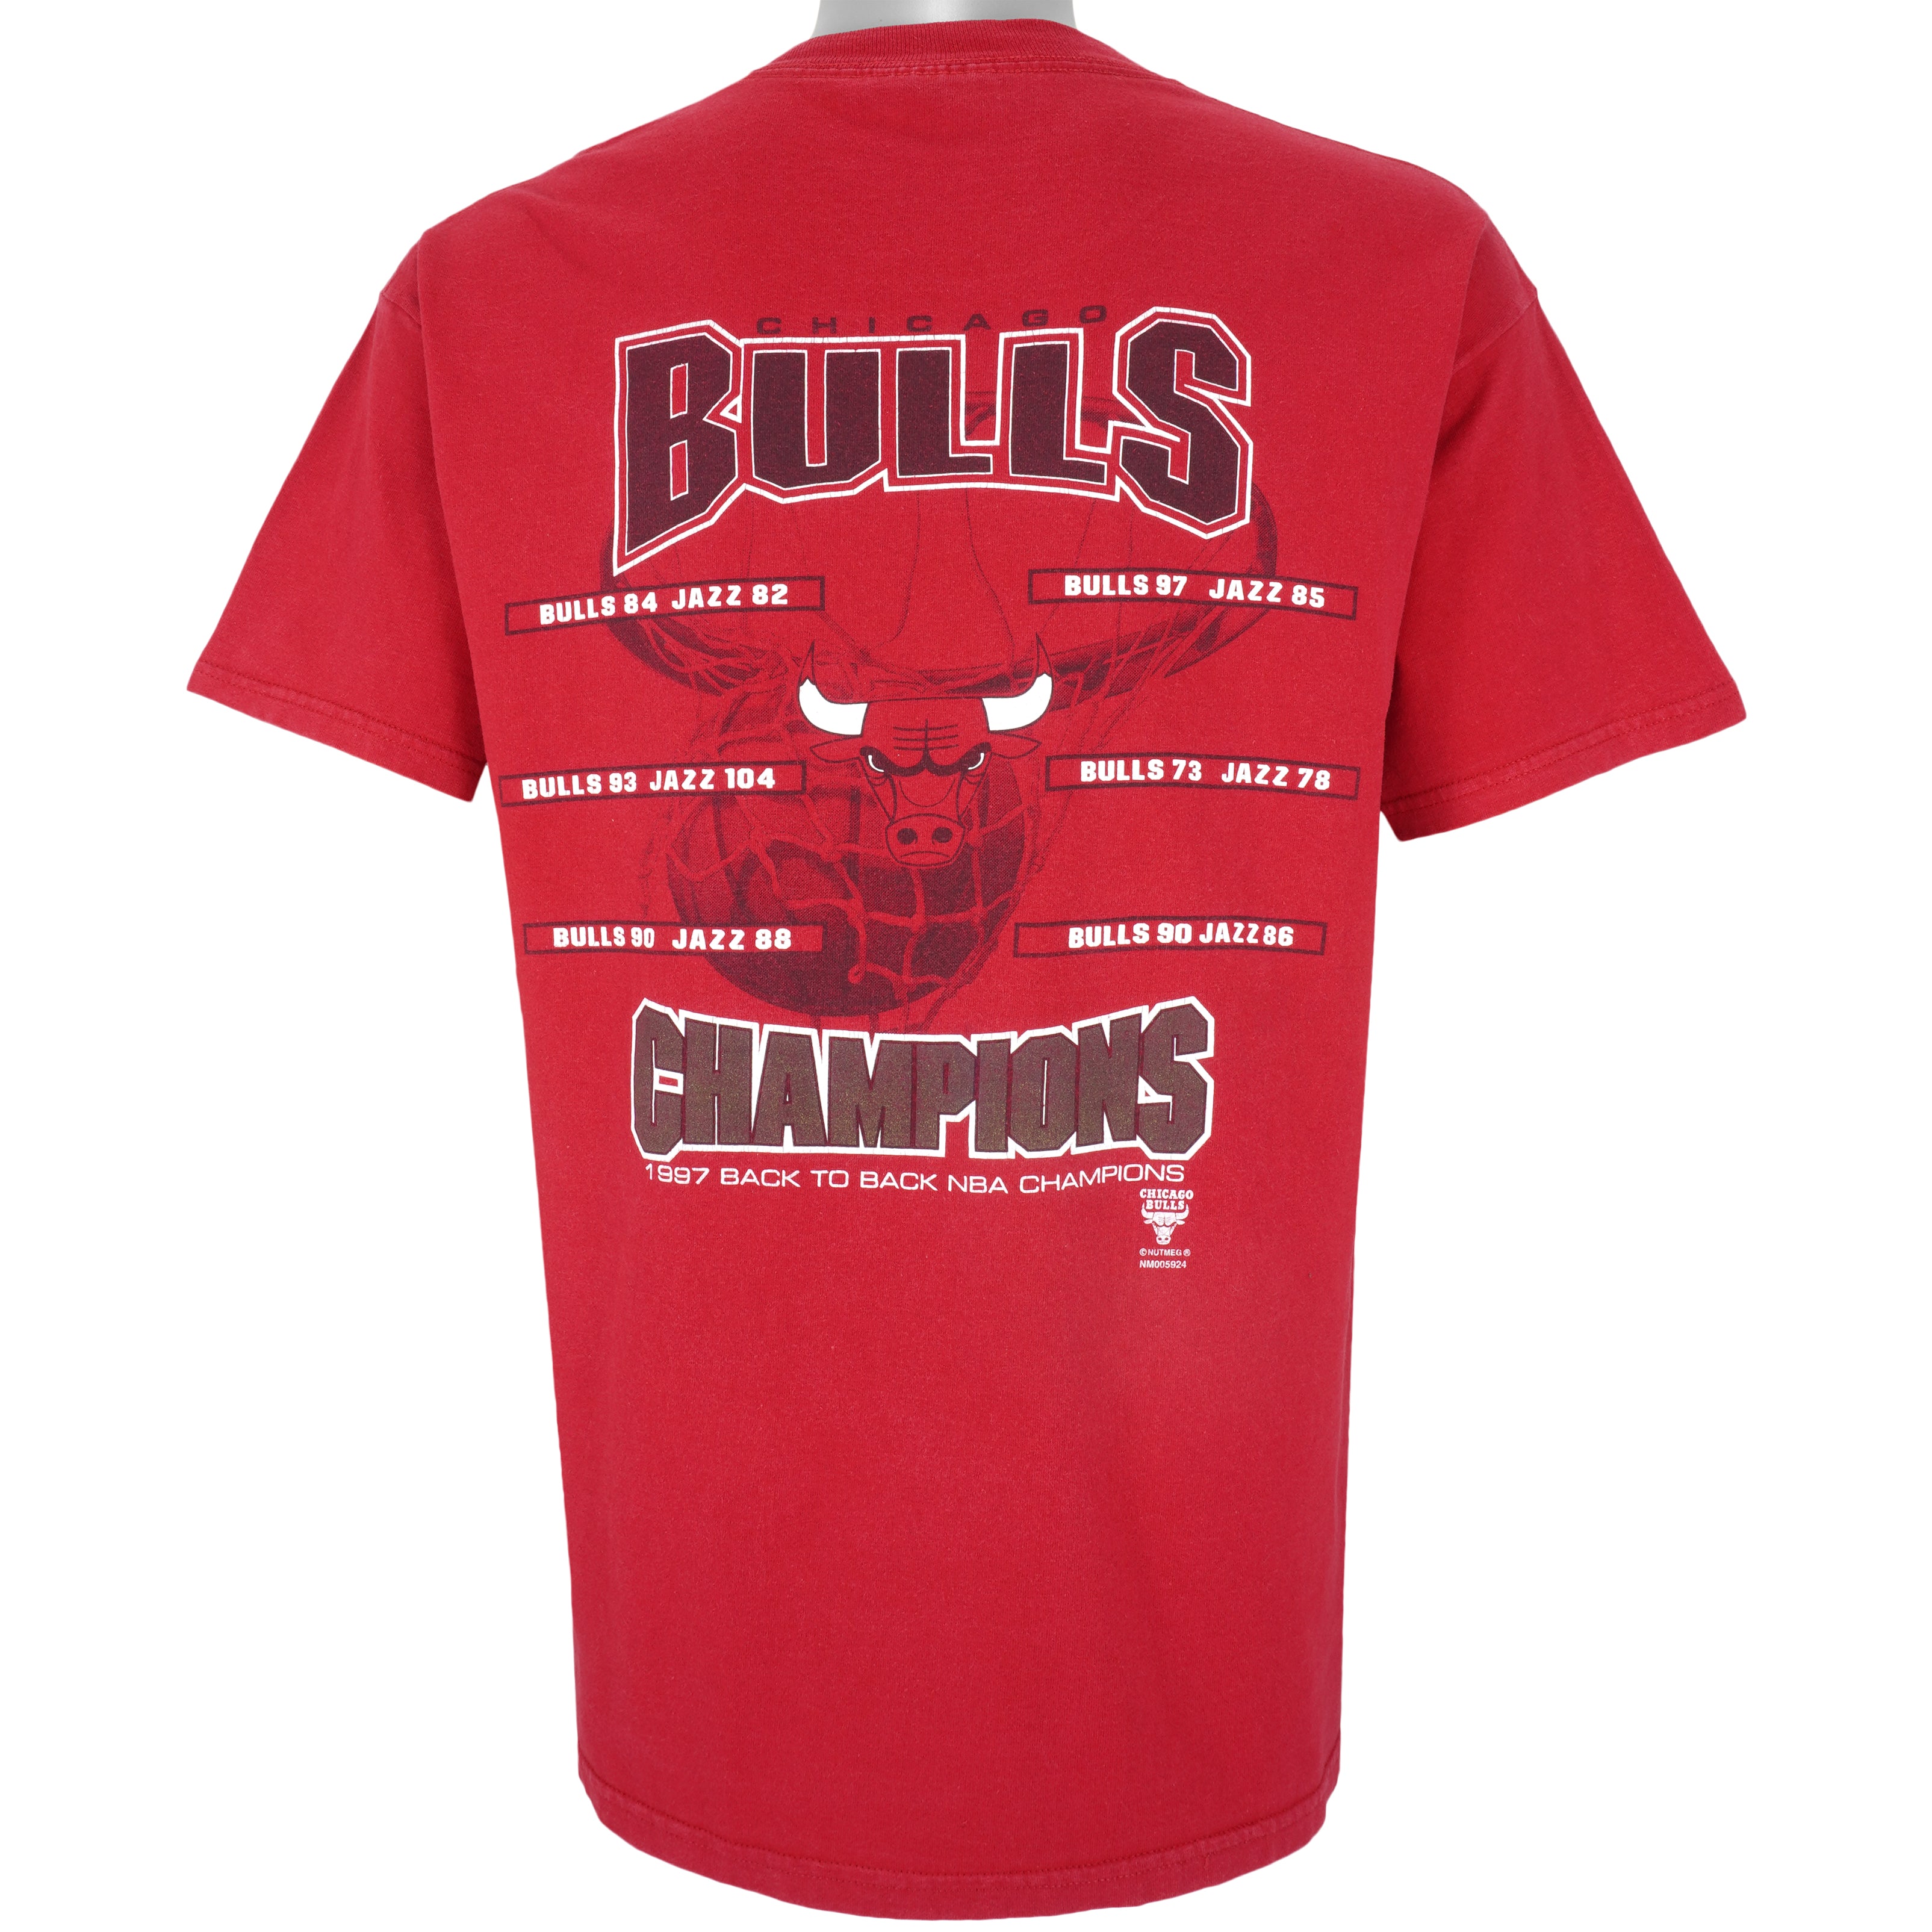 Vintage Chicago Bulls 1997 Champions Tshirt 